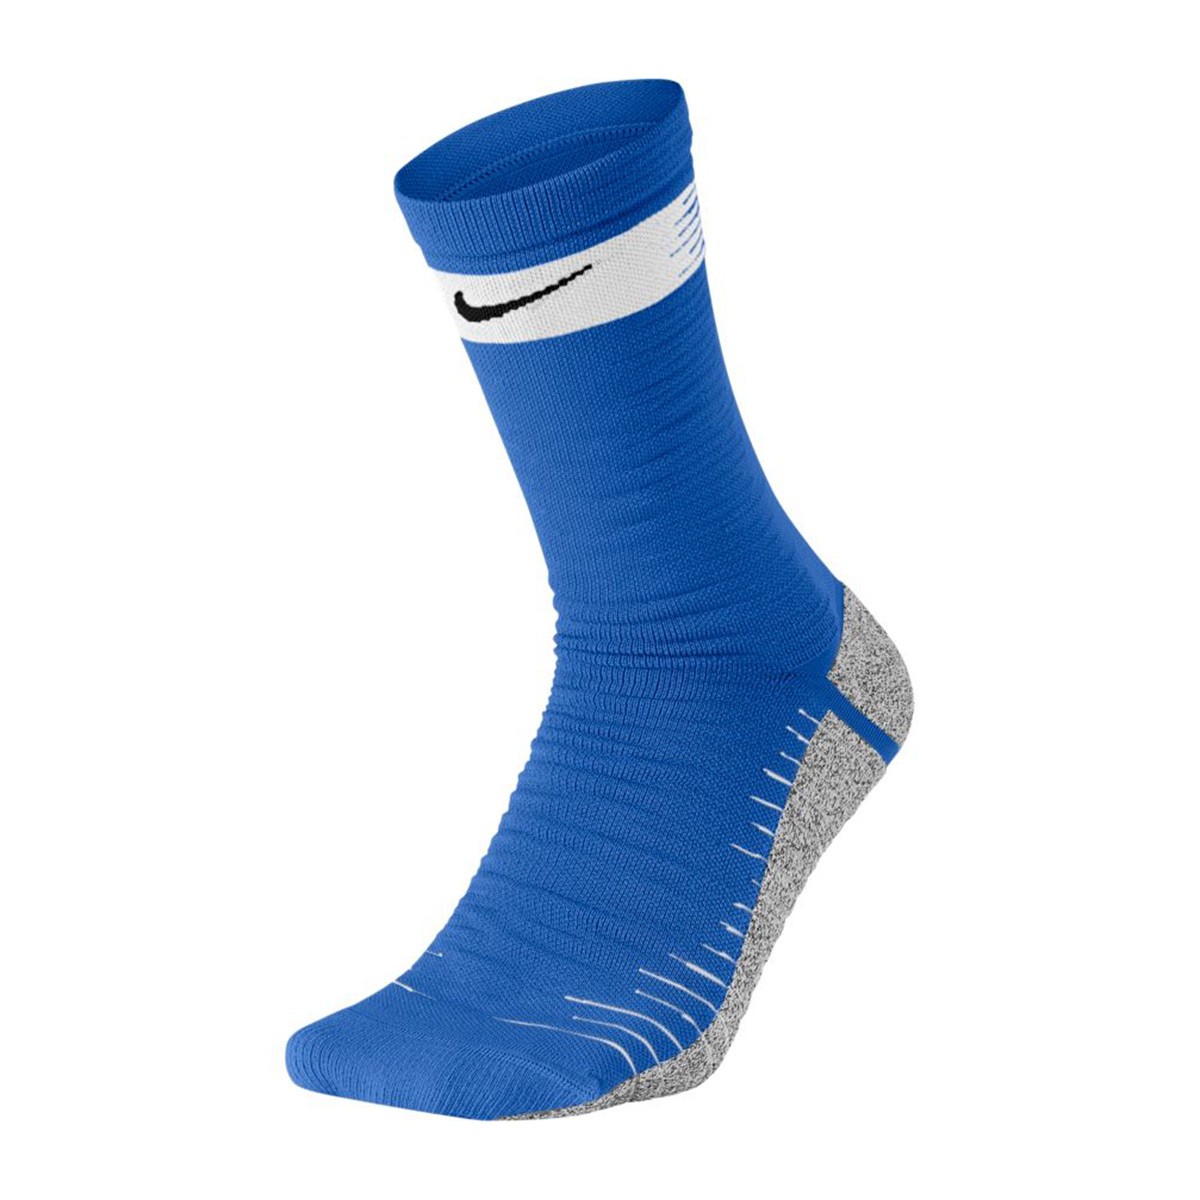 royal blue nike socks